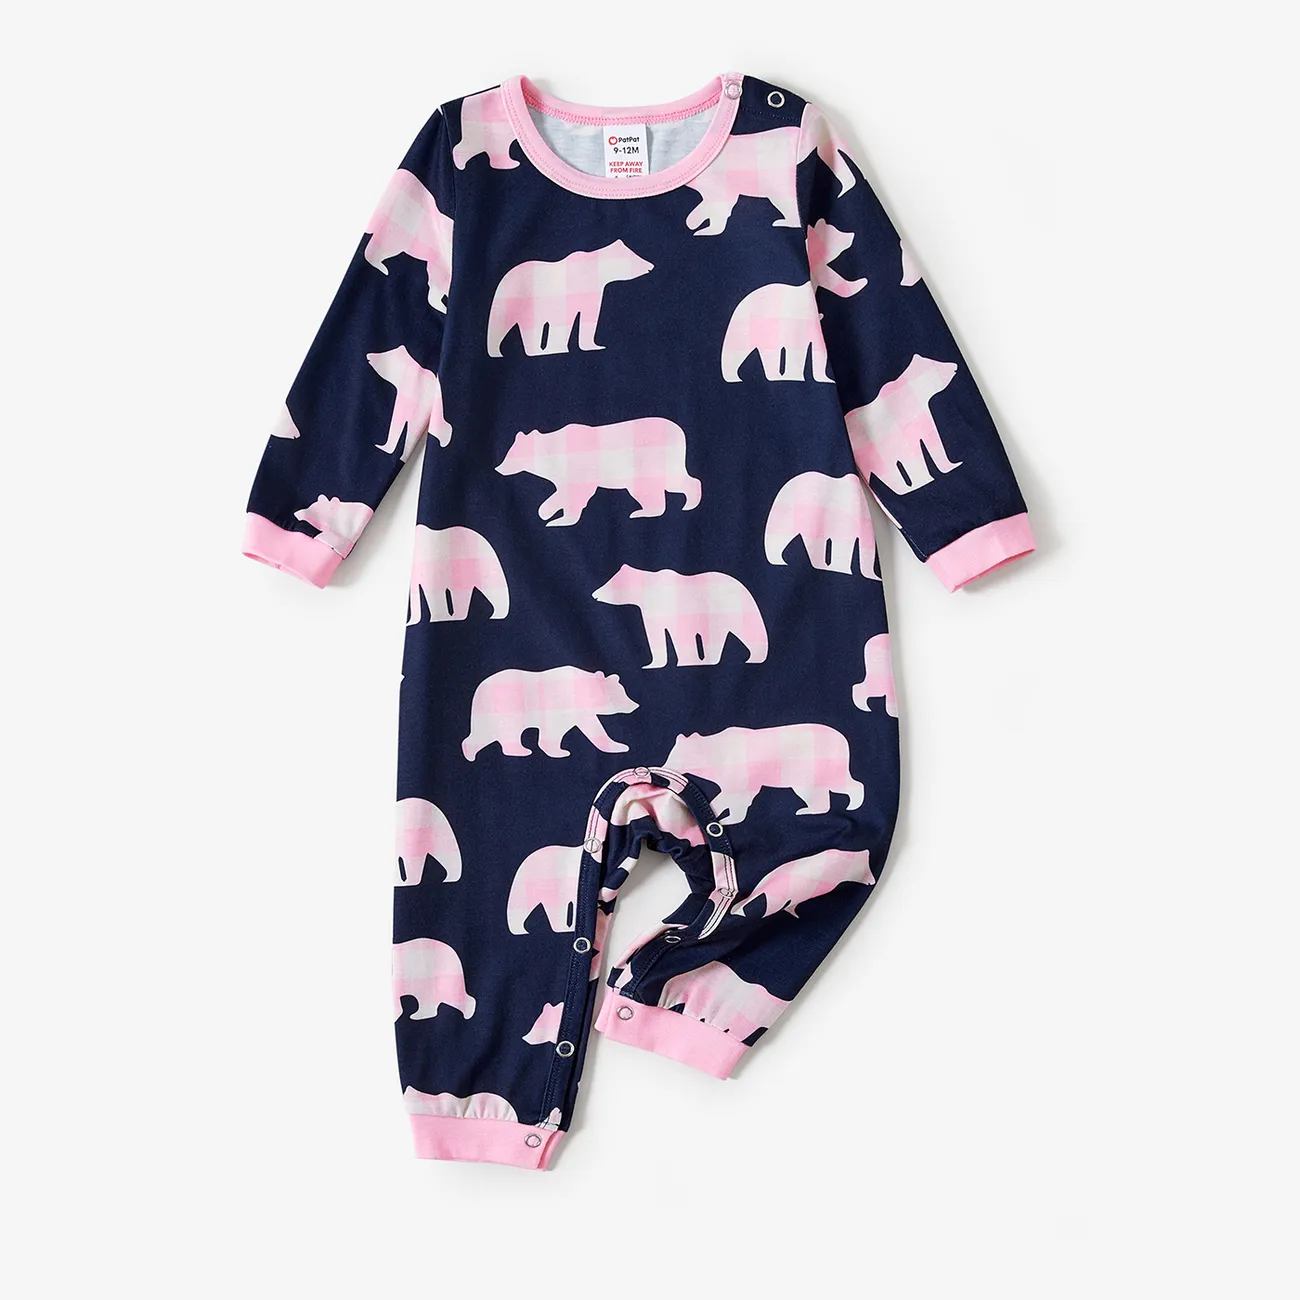 Christmas Family Matching Bear Print Long-sleeve Pajamas Sets(Flame resistant)  big image 1